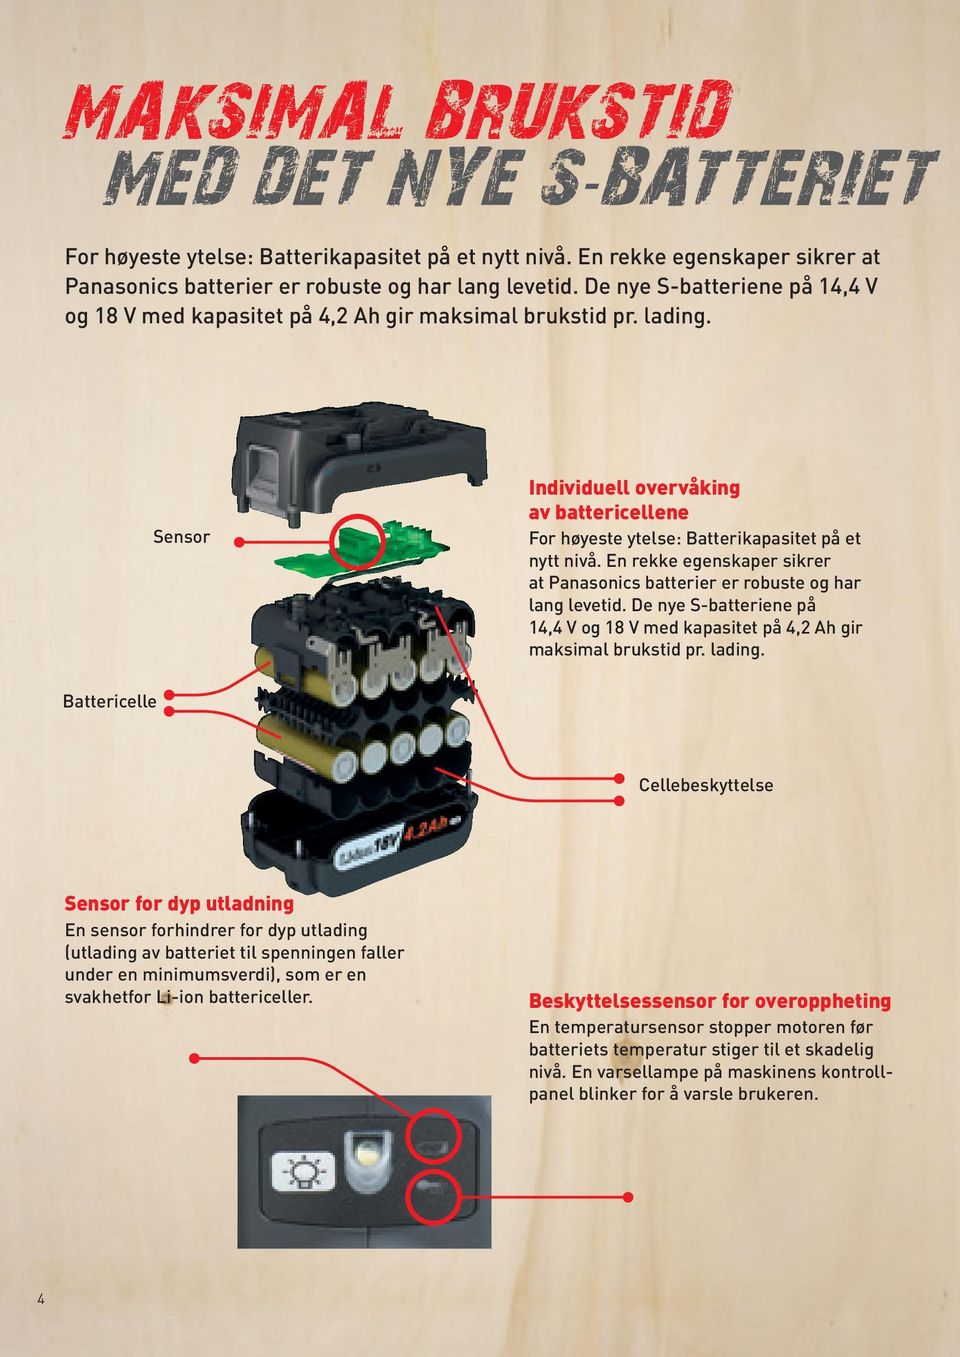 En rekke egenskaper sikrer at Panasonics batterier er robuste og har lang levetid. De nye S-batteriene på 14,4 V og 18 V med kapasitet på 4,2 Ah gir maksimal brukstid pr. lading.